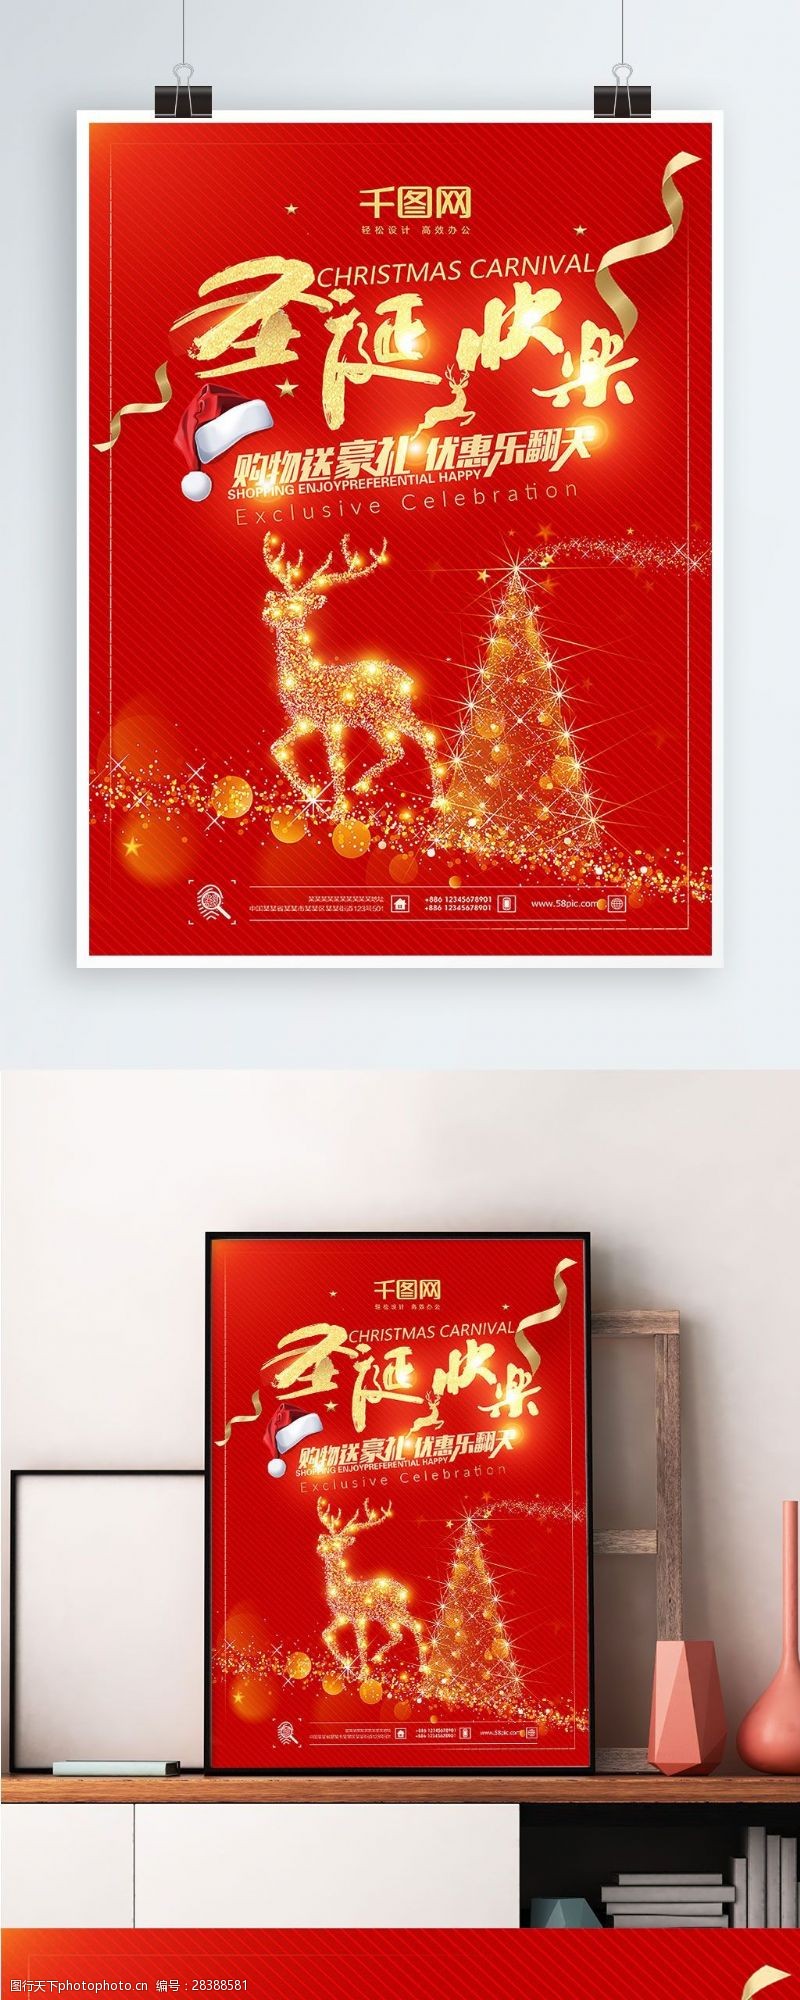 双旦圣诞节快乐主题海报